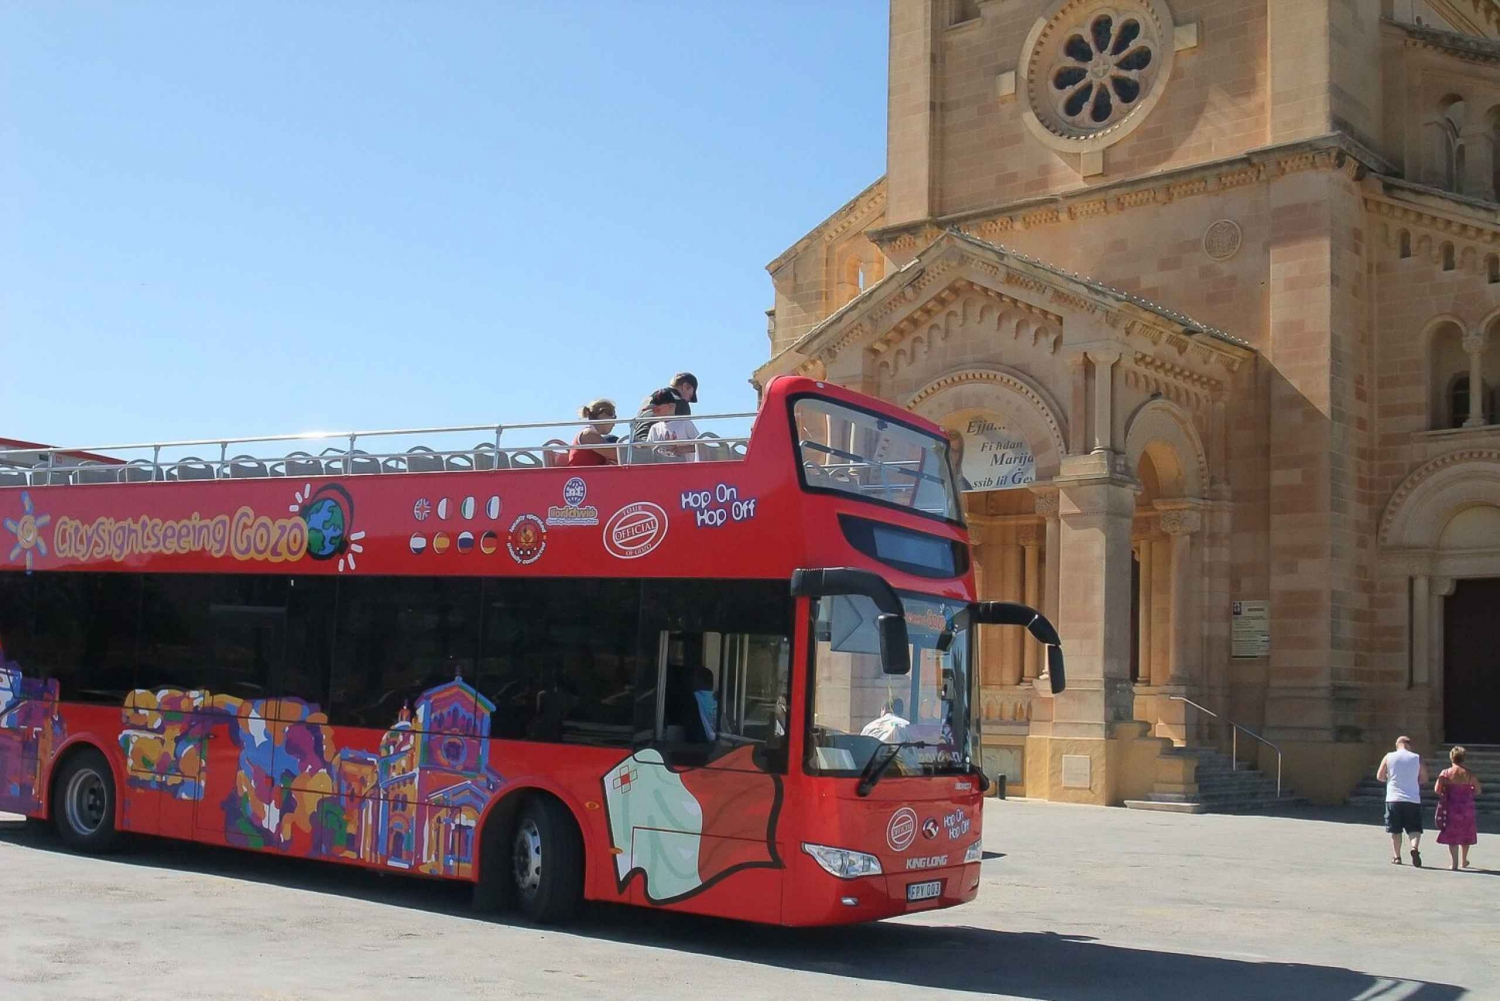 Gozo: Wycieczka autobusowa hop-on hop-off z krajoznawczym zwiedzaniem miasta